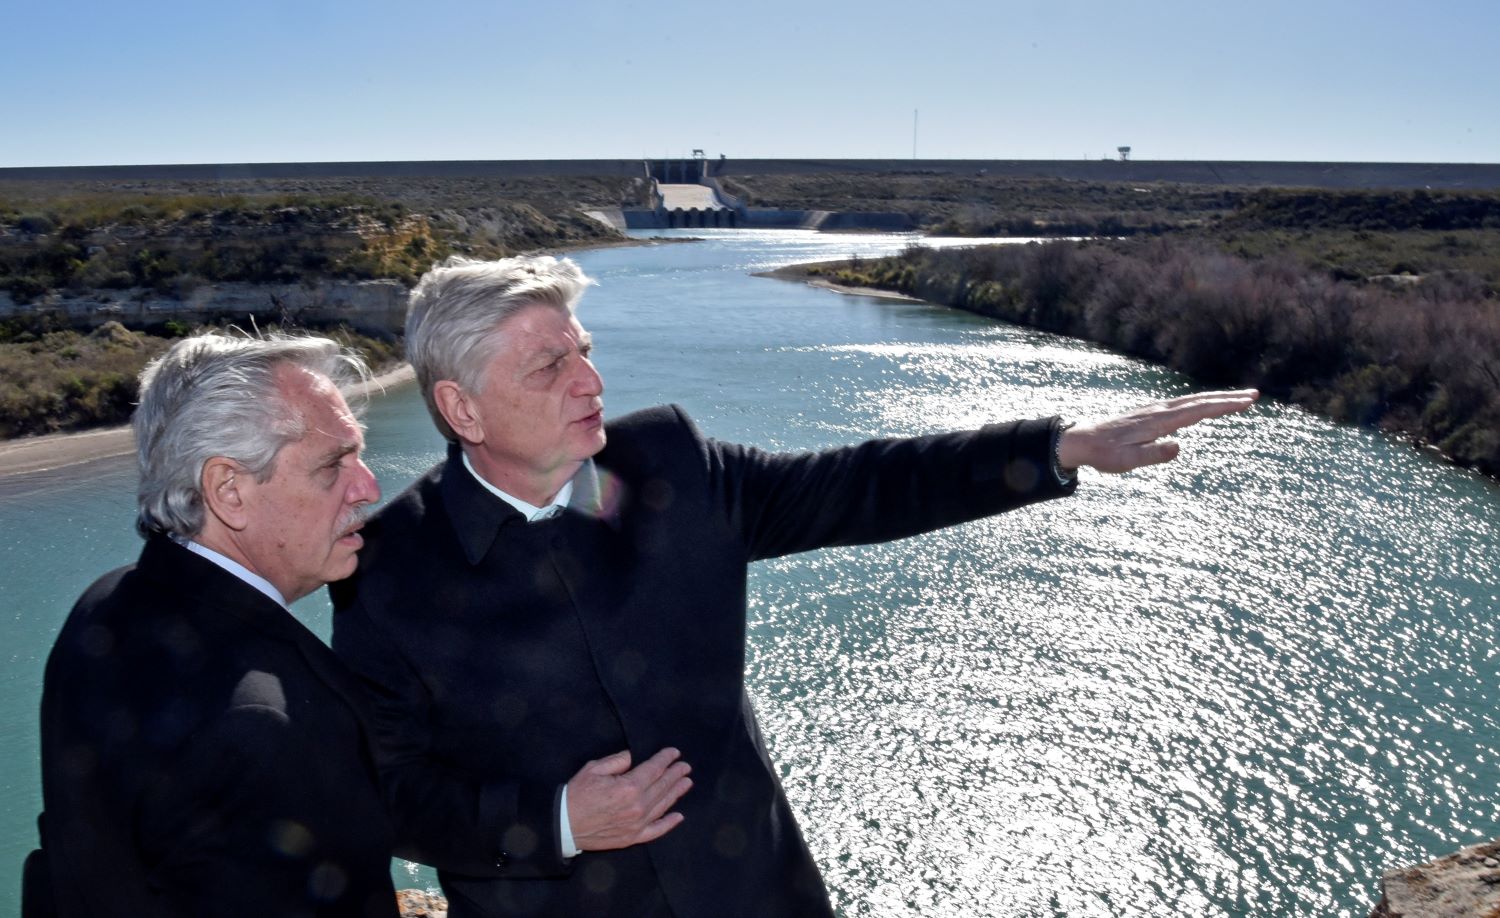 Ziliotto: “Presidente, muchas gracias por ayudarnos a defender el río Colorado”